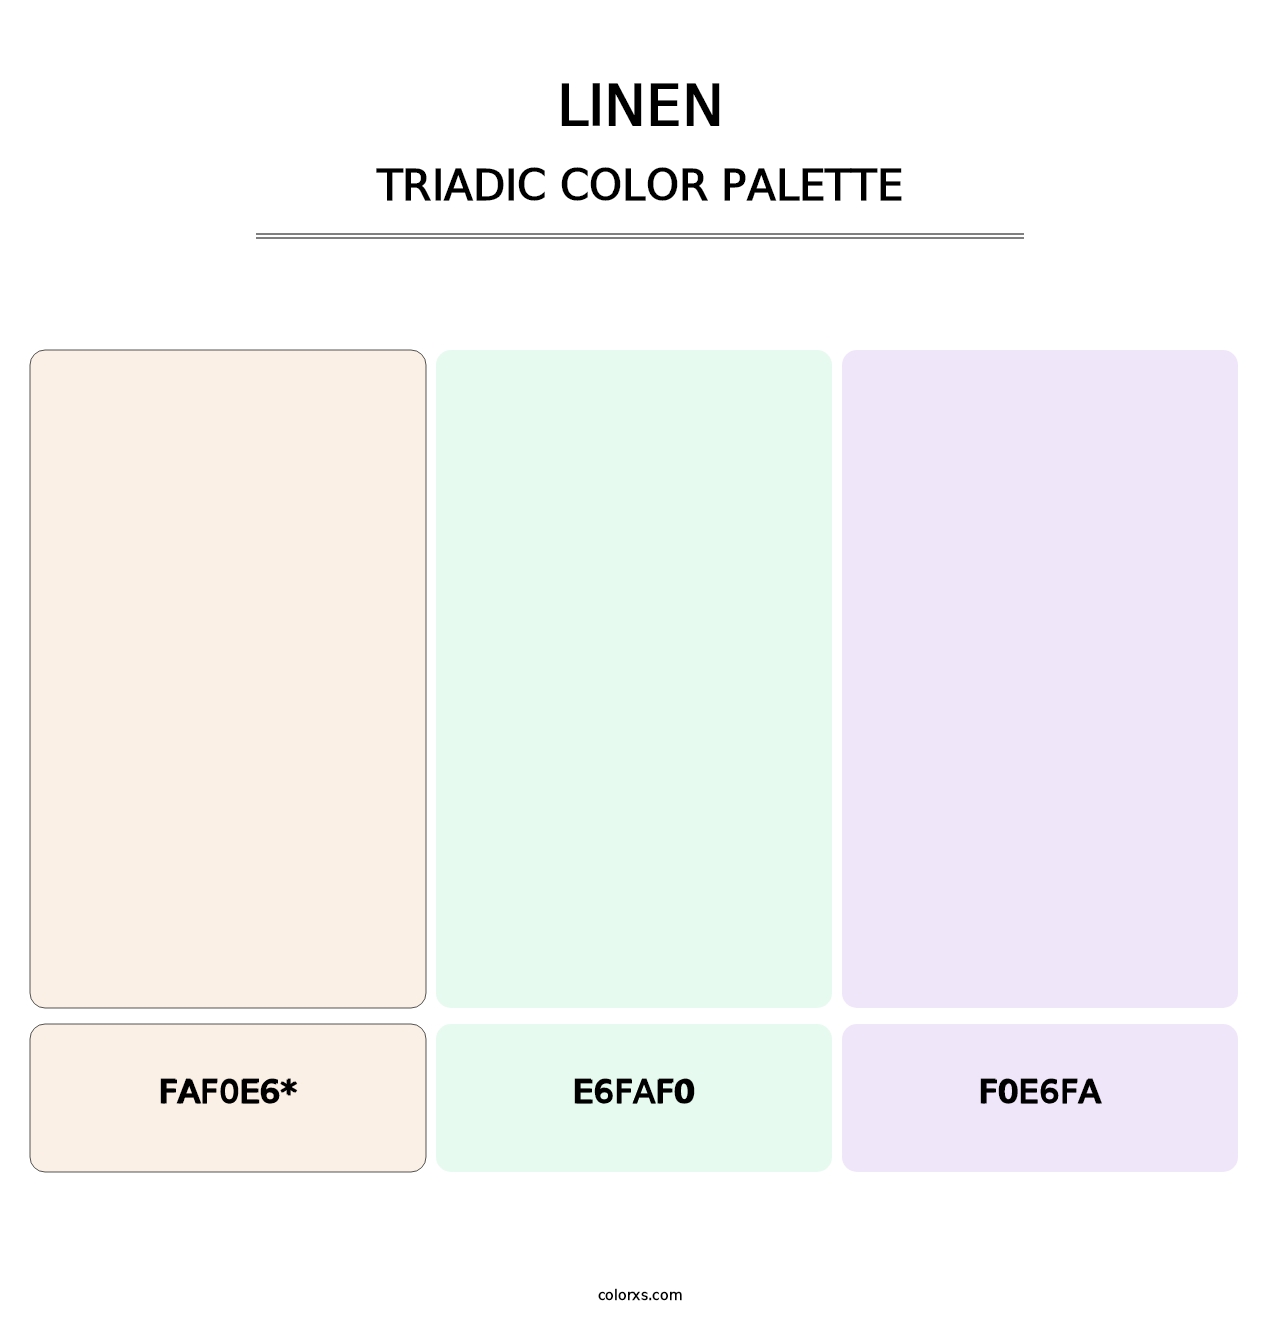 Linen - Triadic Color Palette